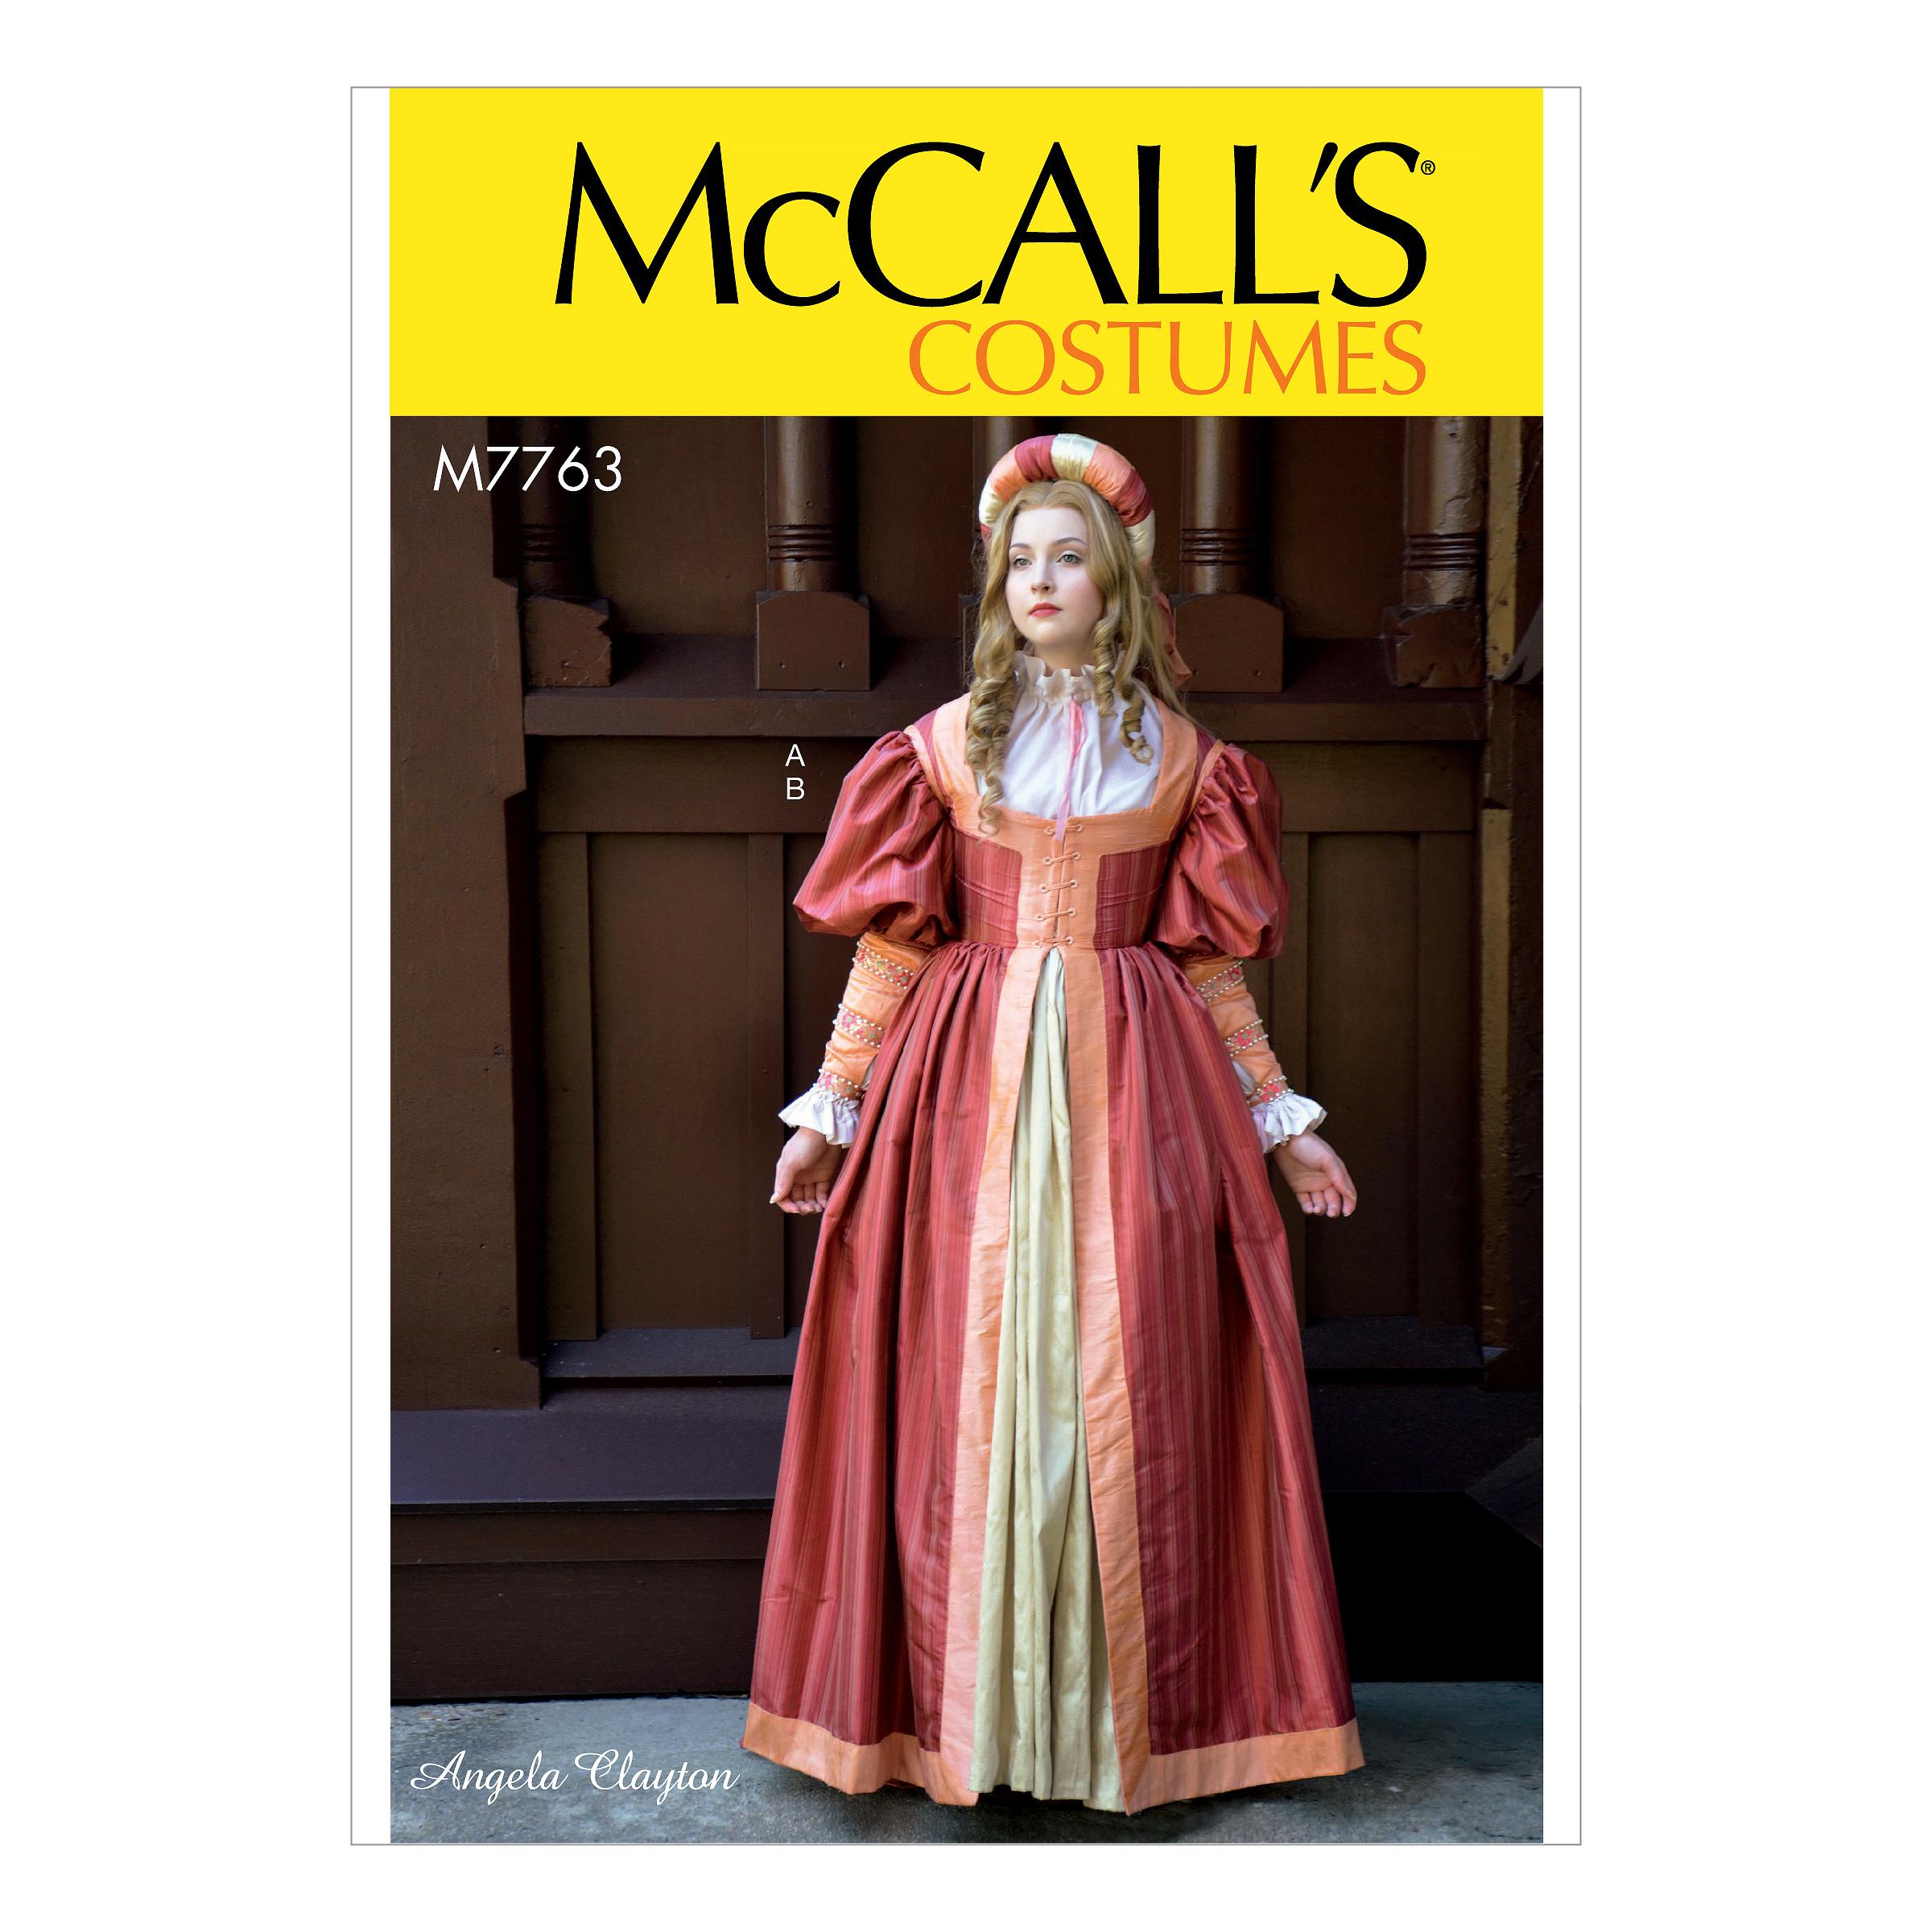 McCalls M7763 Costumes